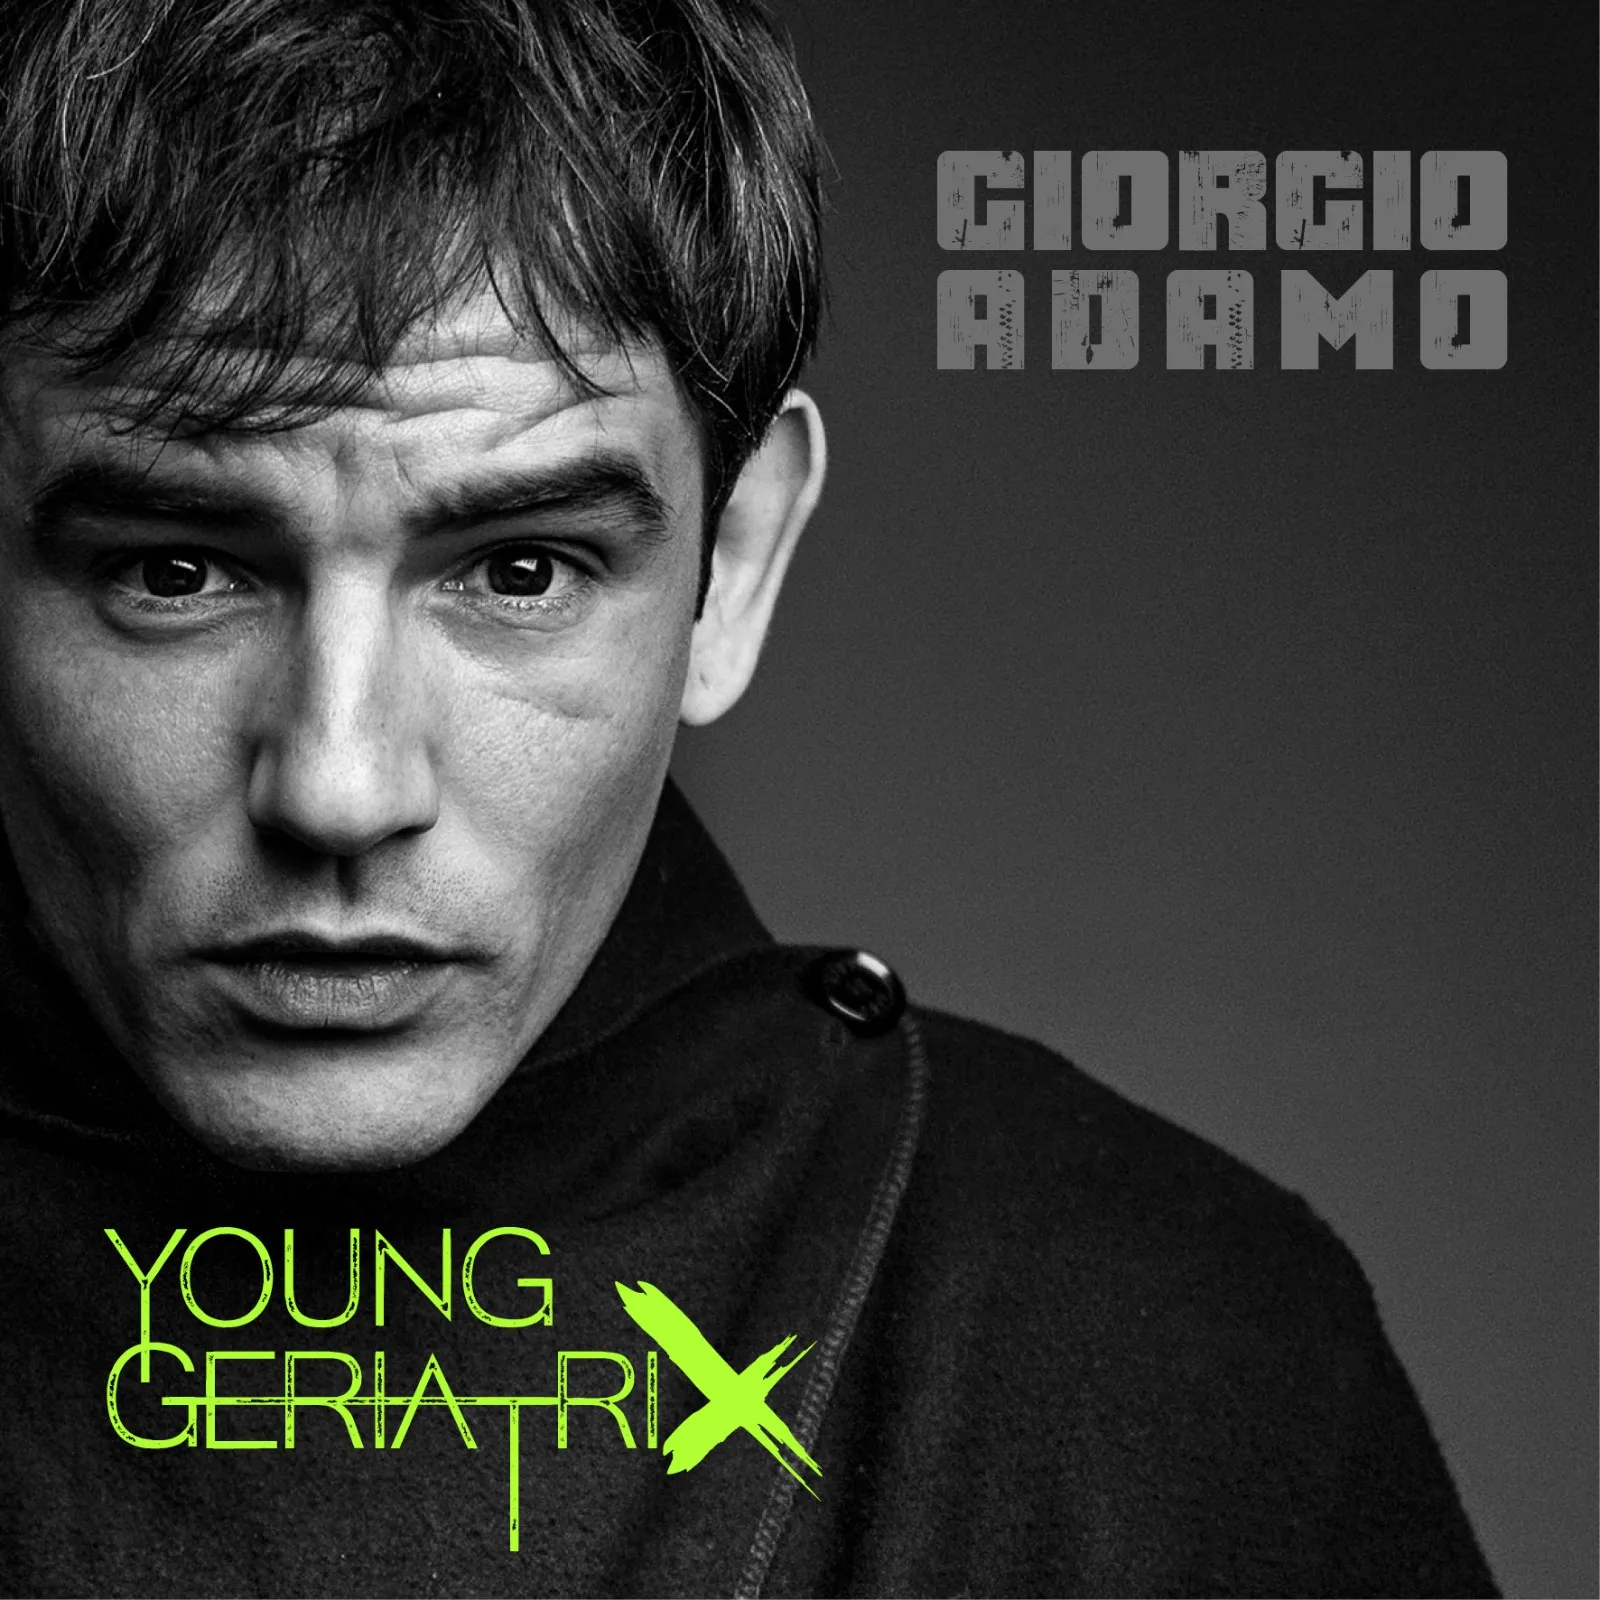 Young Geriatrix - Giorgio Adamo